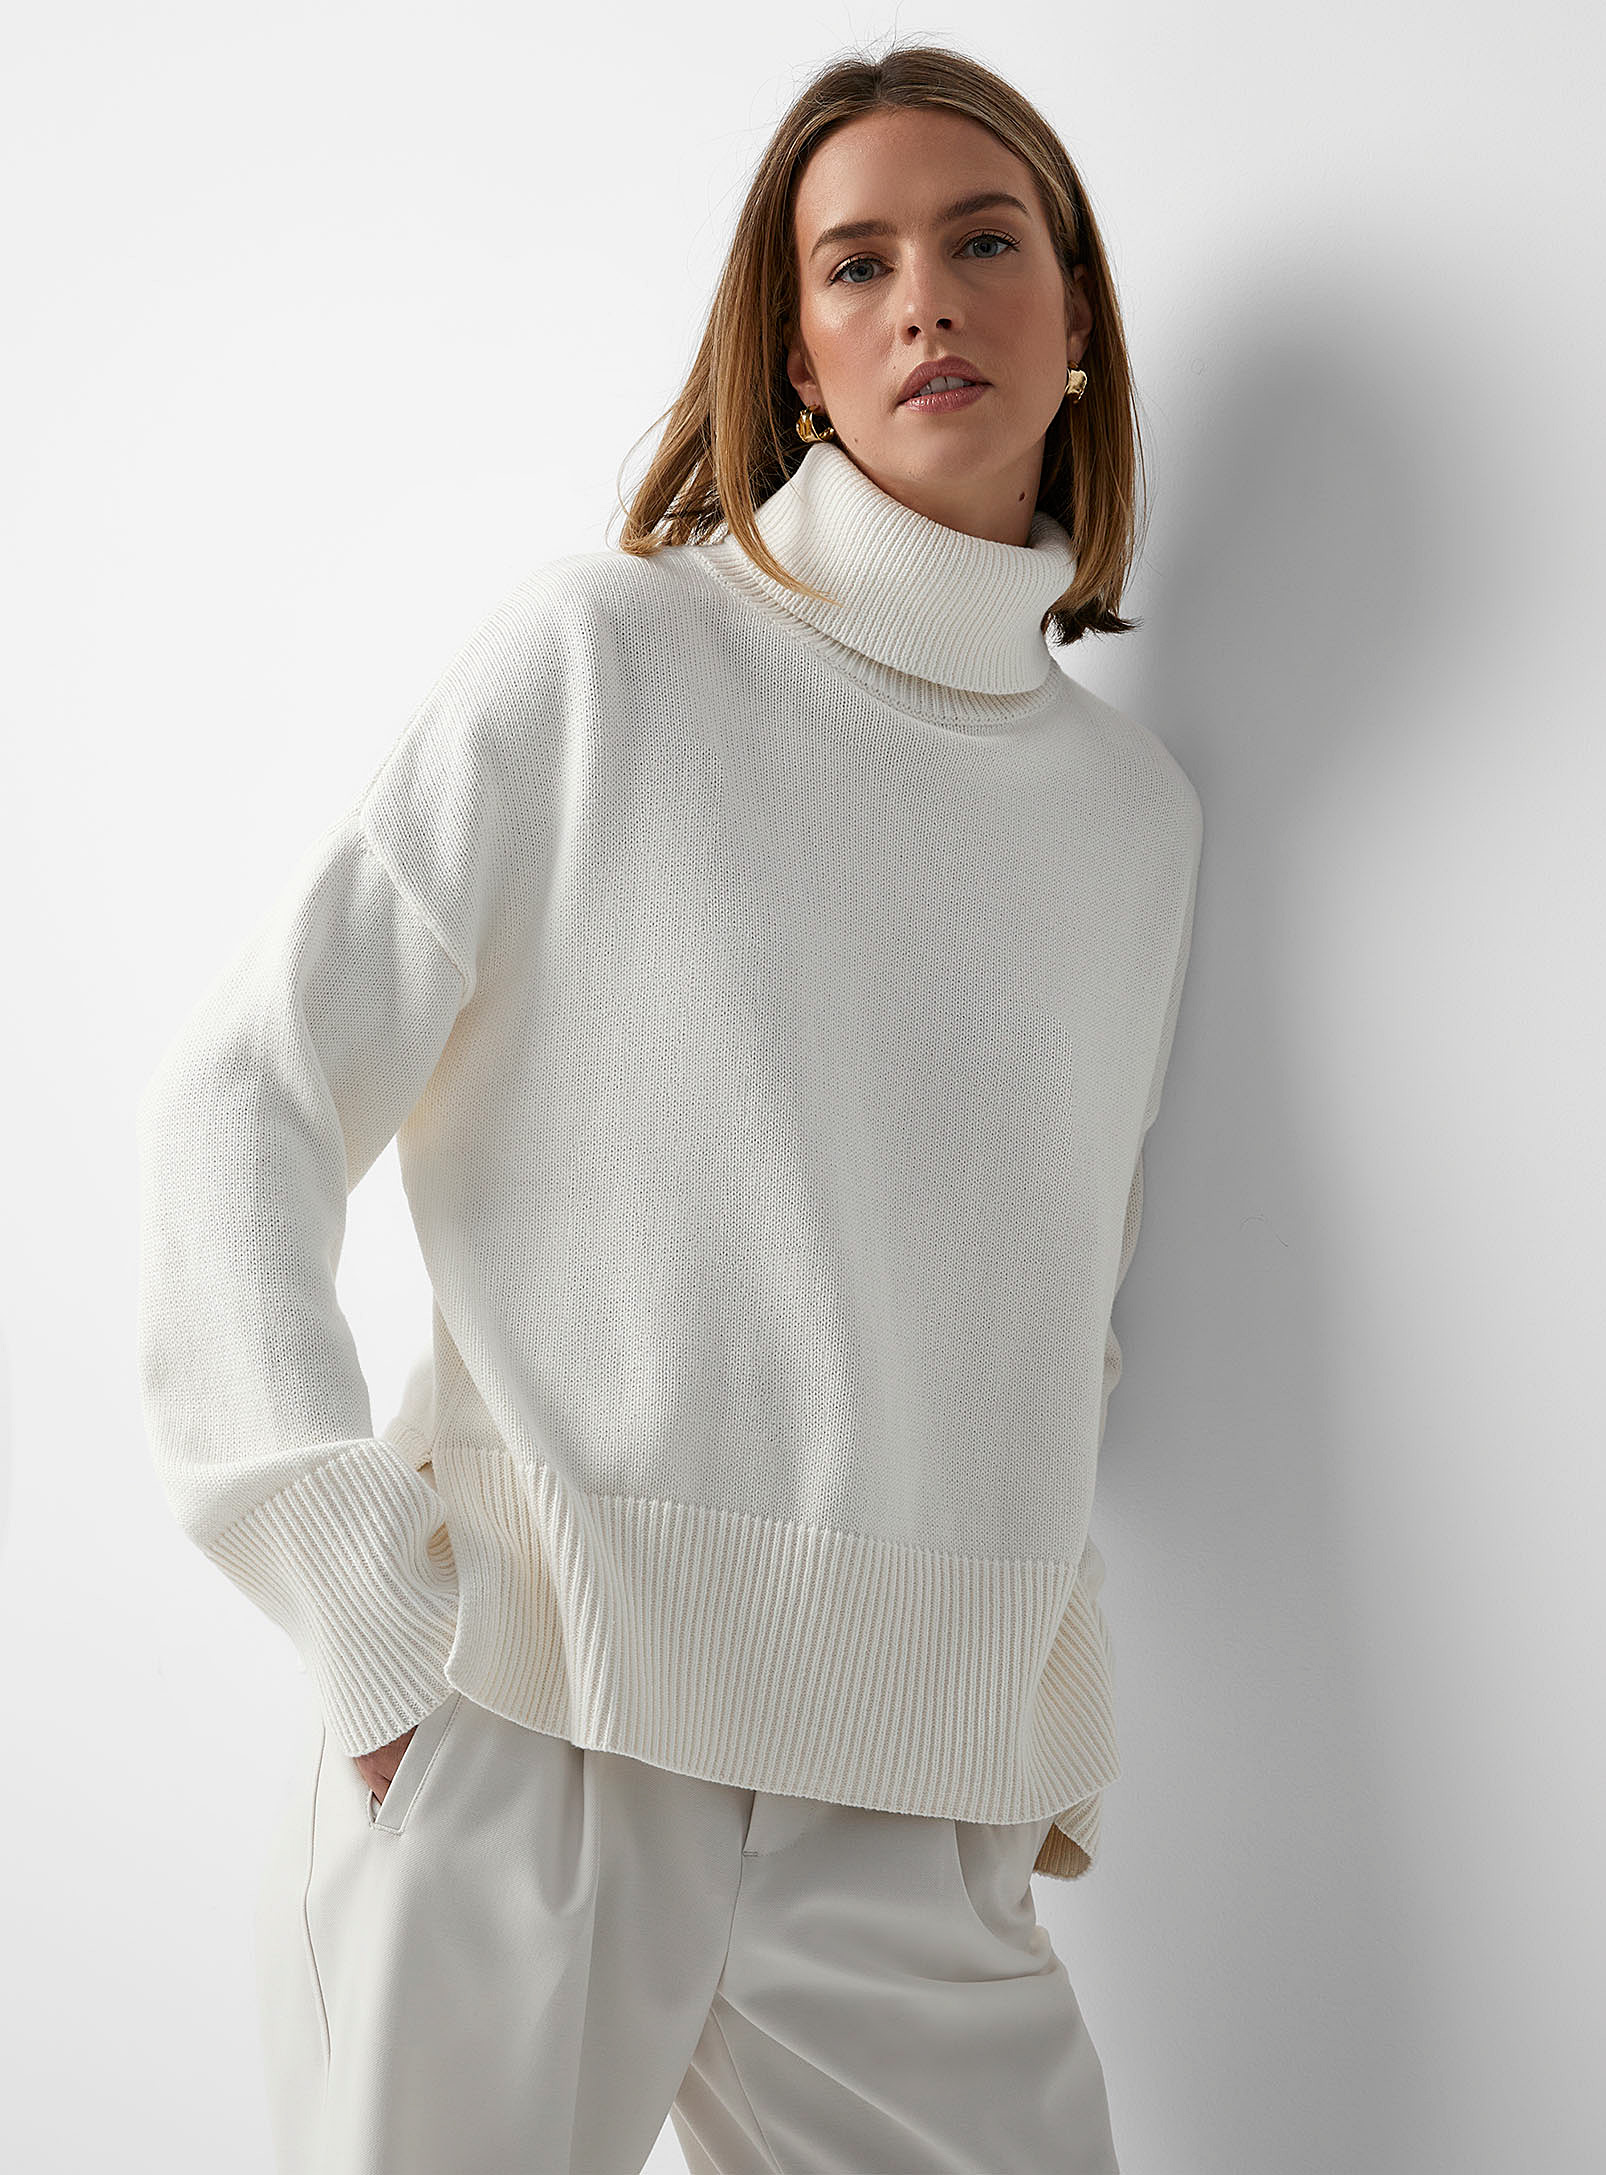 Contemporaine Ribbed Edging Loose Turtleneck Sweater In Cream Beige